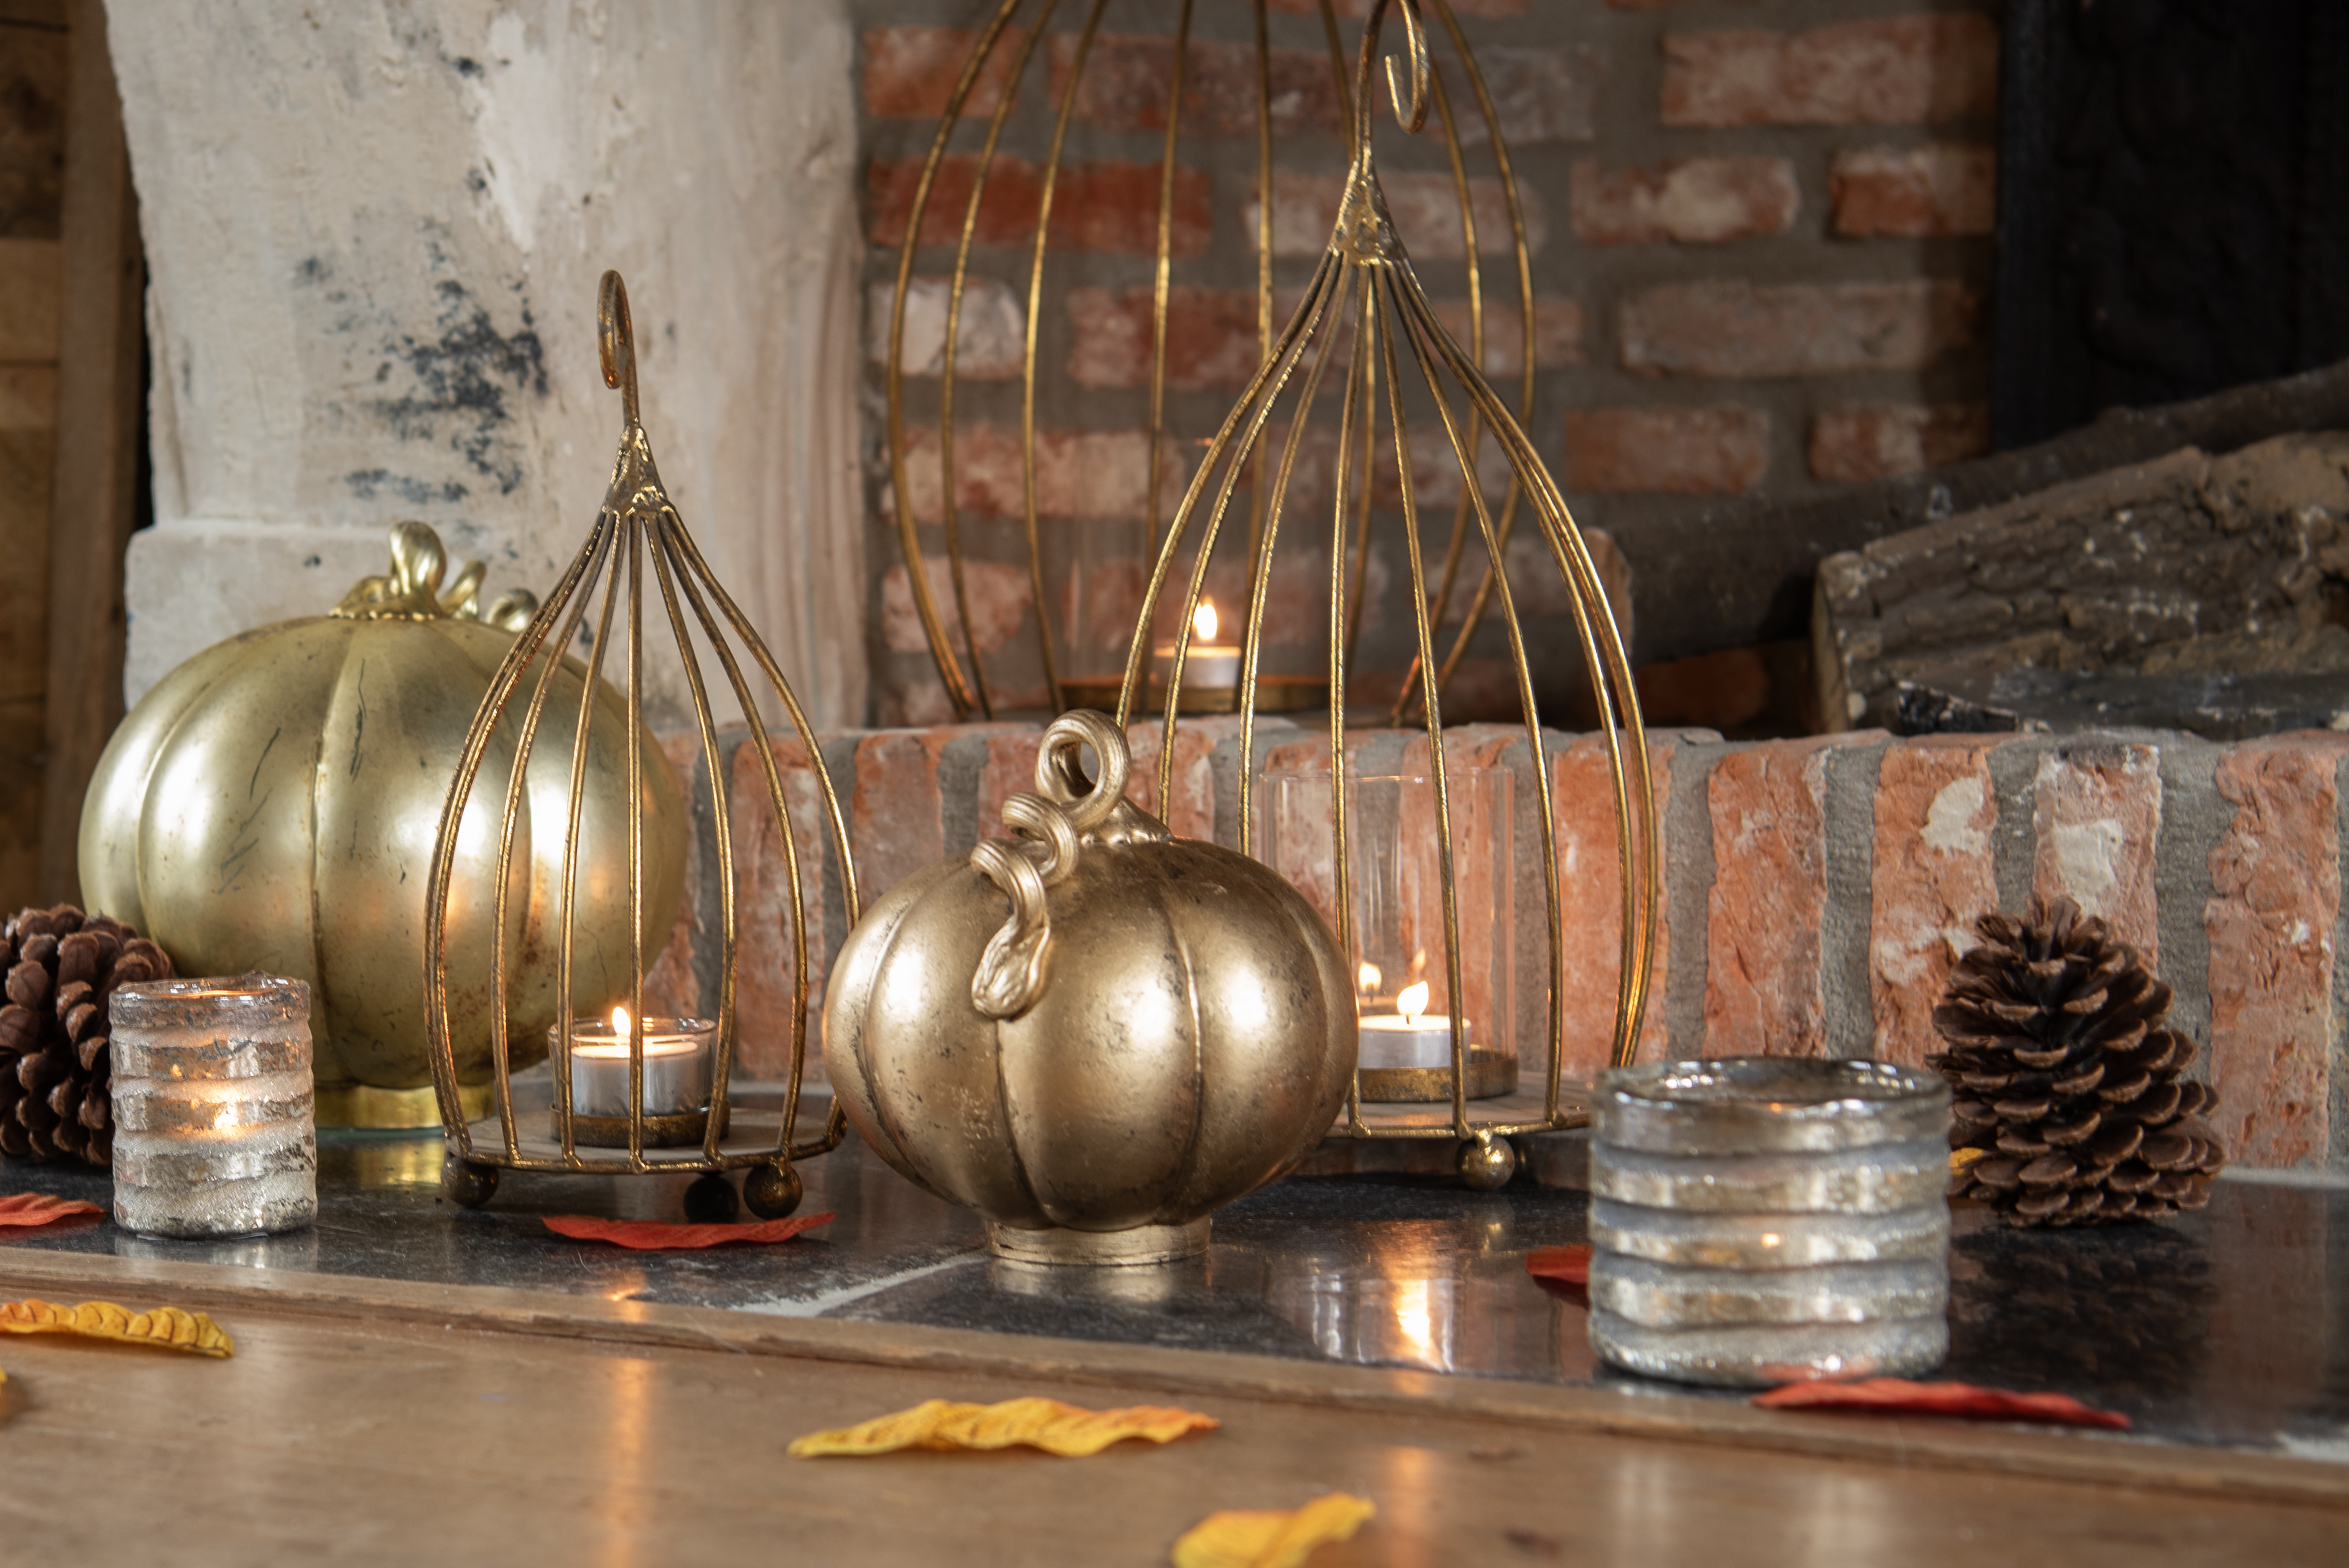 Une décoration chaleureuse et accueillante pour l'automne ou Halloween est installée sur une table ou une cheminée en bois, avec en arrière-plan un mur de briques montrant des traces de plâtre écaillé. Au centre de l'arrangement se trouve une grande citrouille en métal avec une riche teinte dorée, accompagnée d'une plus petite citrouille conçue de manière similaire. Les citrouilles ont une surface polie qui reflète doucement la lumière des bougies environnantes.

À gauche de la composition se trouve un porte-bougie en métal avec une structure ouverte, diffusant de manière atmosphérique la lumière de la bougie qui brûle à l'intérieur. Un autre porte-bougie similaire est visible à droite, contribuant tous deux à la lueur chaleureuse de l'ensemble.

Dispersés sur la table se trouvent de petits porte-bougies argentés avec des bougies allumées à l'intérieur, ajoutant à l'ambiance générale de convivialité. Des éléments naturels tels que des pommes de pin et des feuilles d'automne aux riches tons rouges et dorés ont également été ajoutés à la décoration, renforçant l'association avec l'automne et ajoutant une sensation de beauté naturelle à l'ensemble.